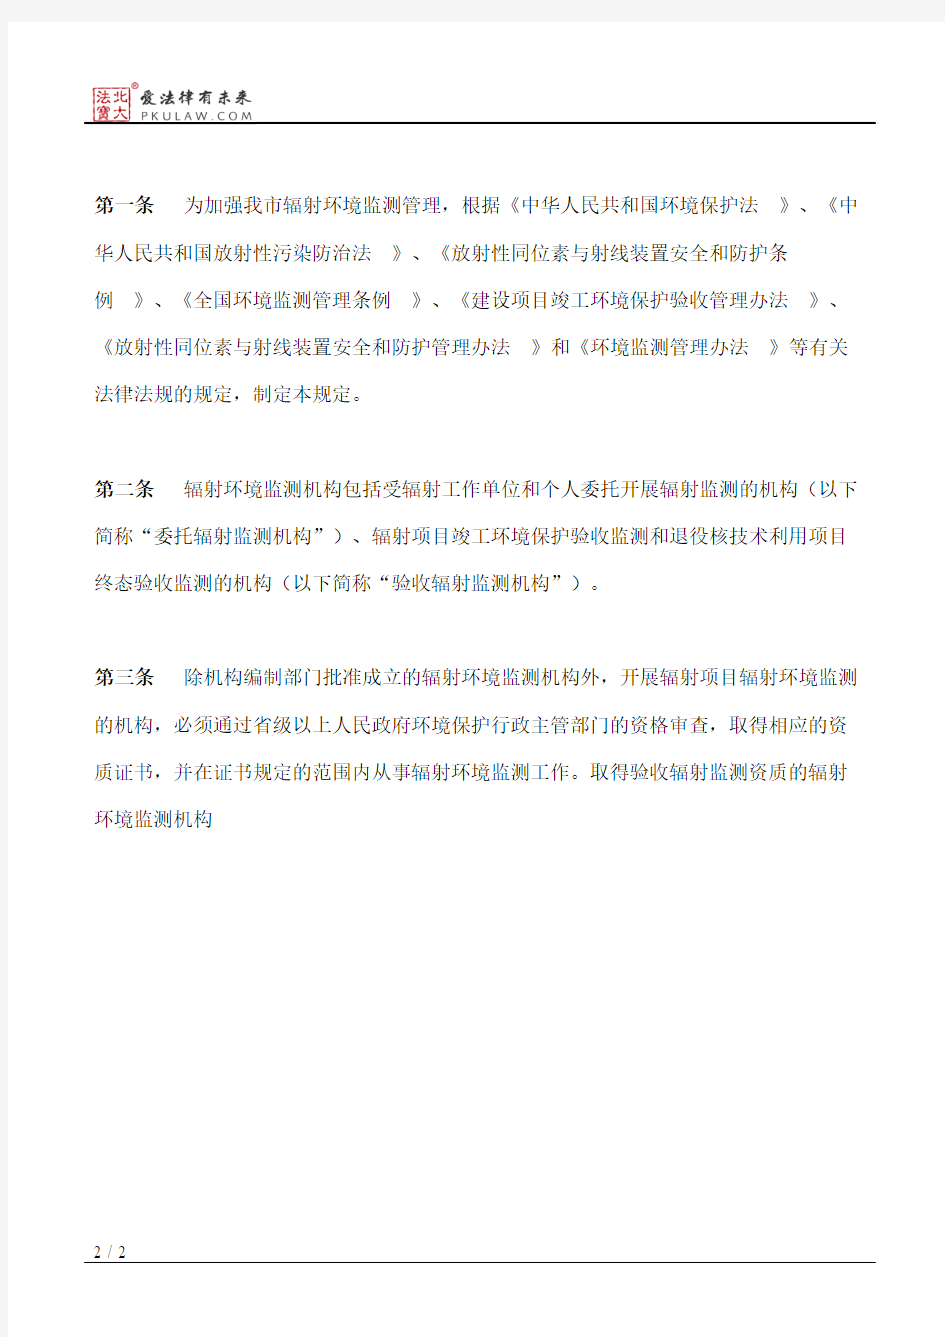 重庆市环境保护局关于印发辐射环境监测管理规定的通知